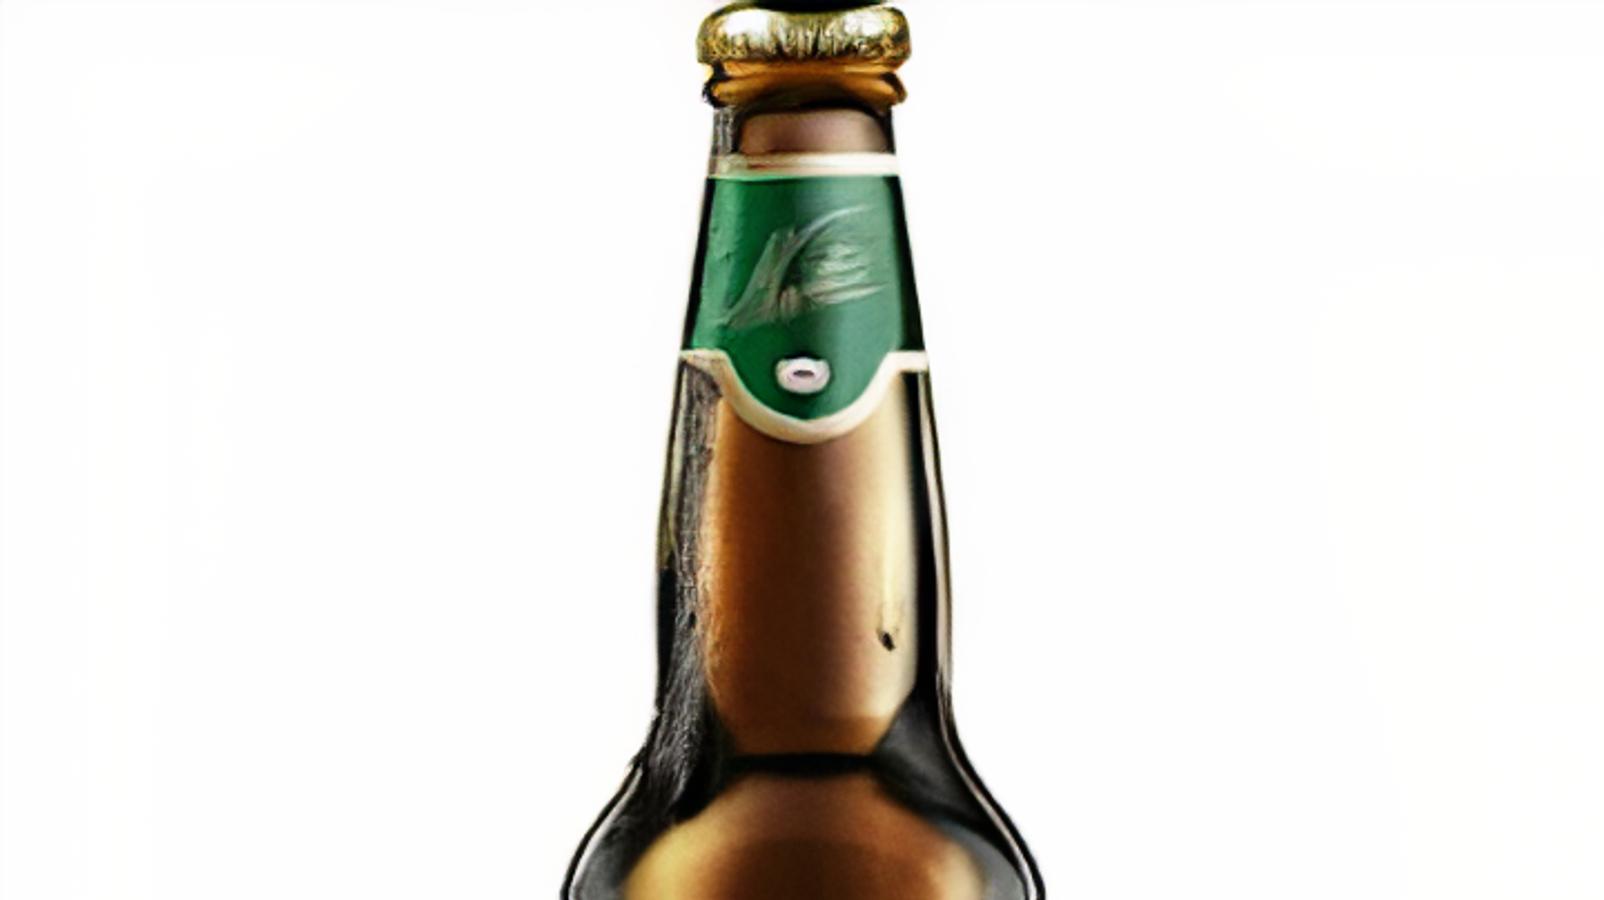 Alexander Keith's IPA, 12oz bottled beer (5.0% ABV)